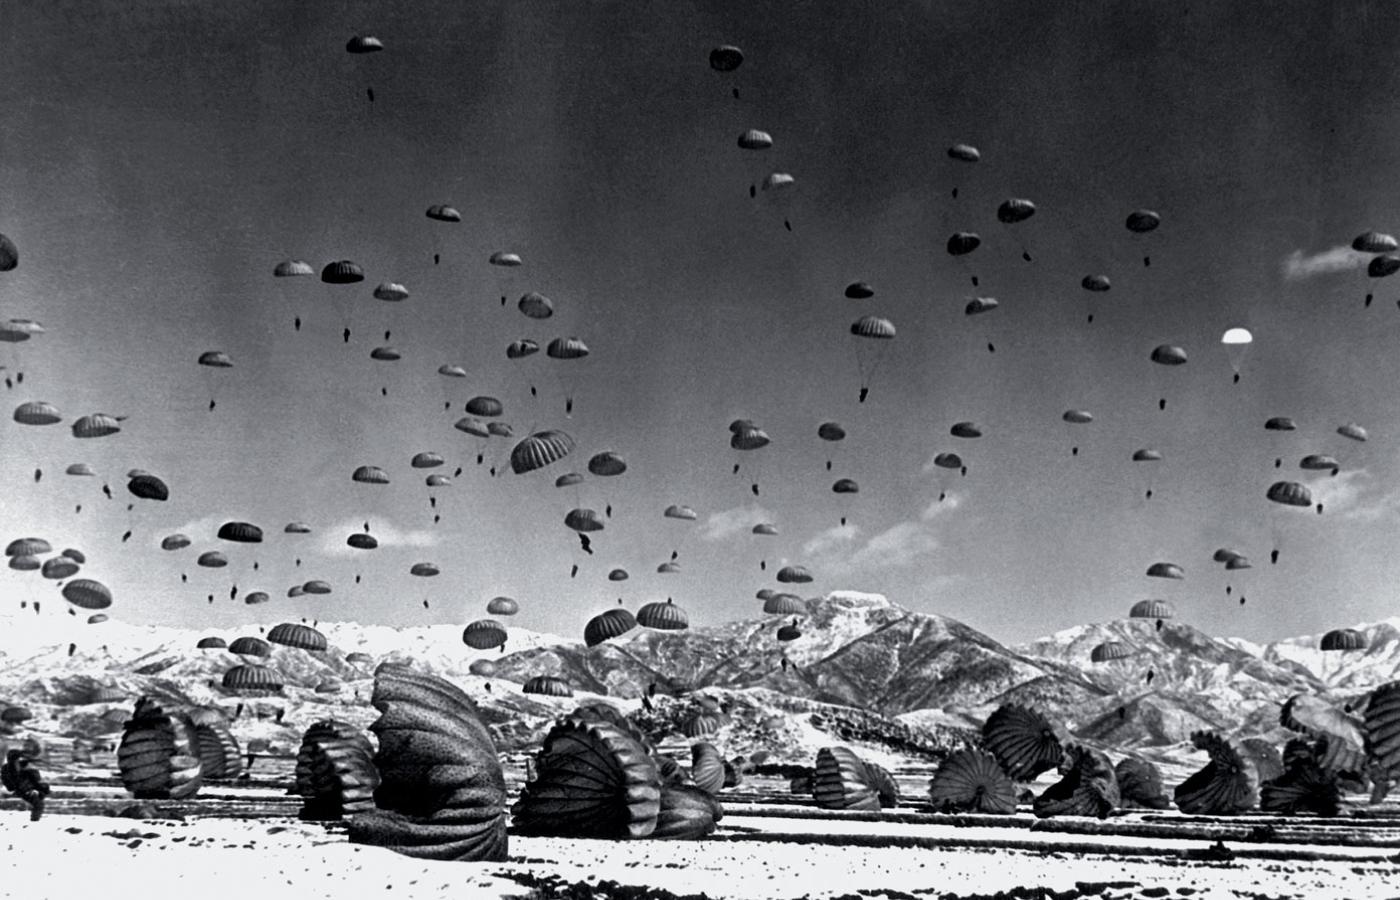 Amerykański desant w pobliżu 38. równoleżnika, Korea, 1951 r.